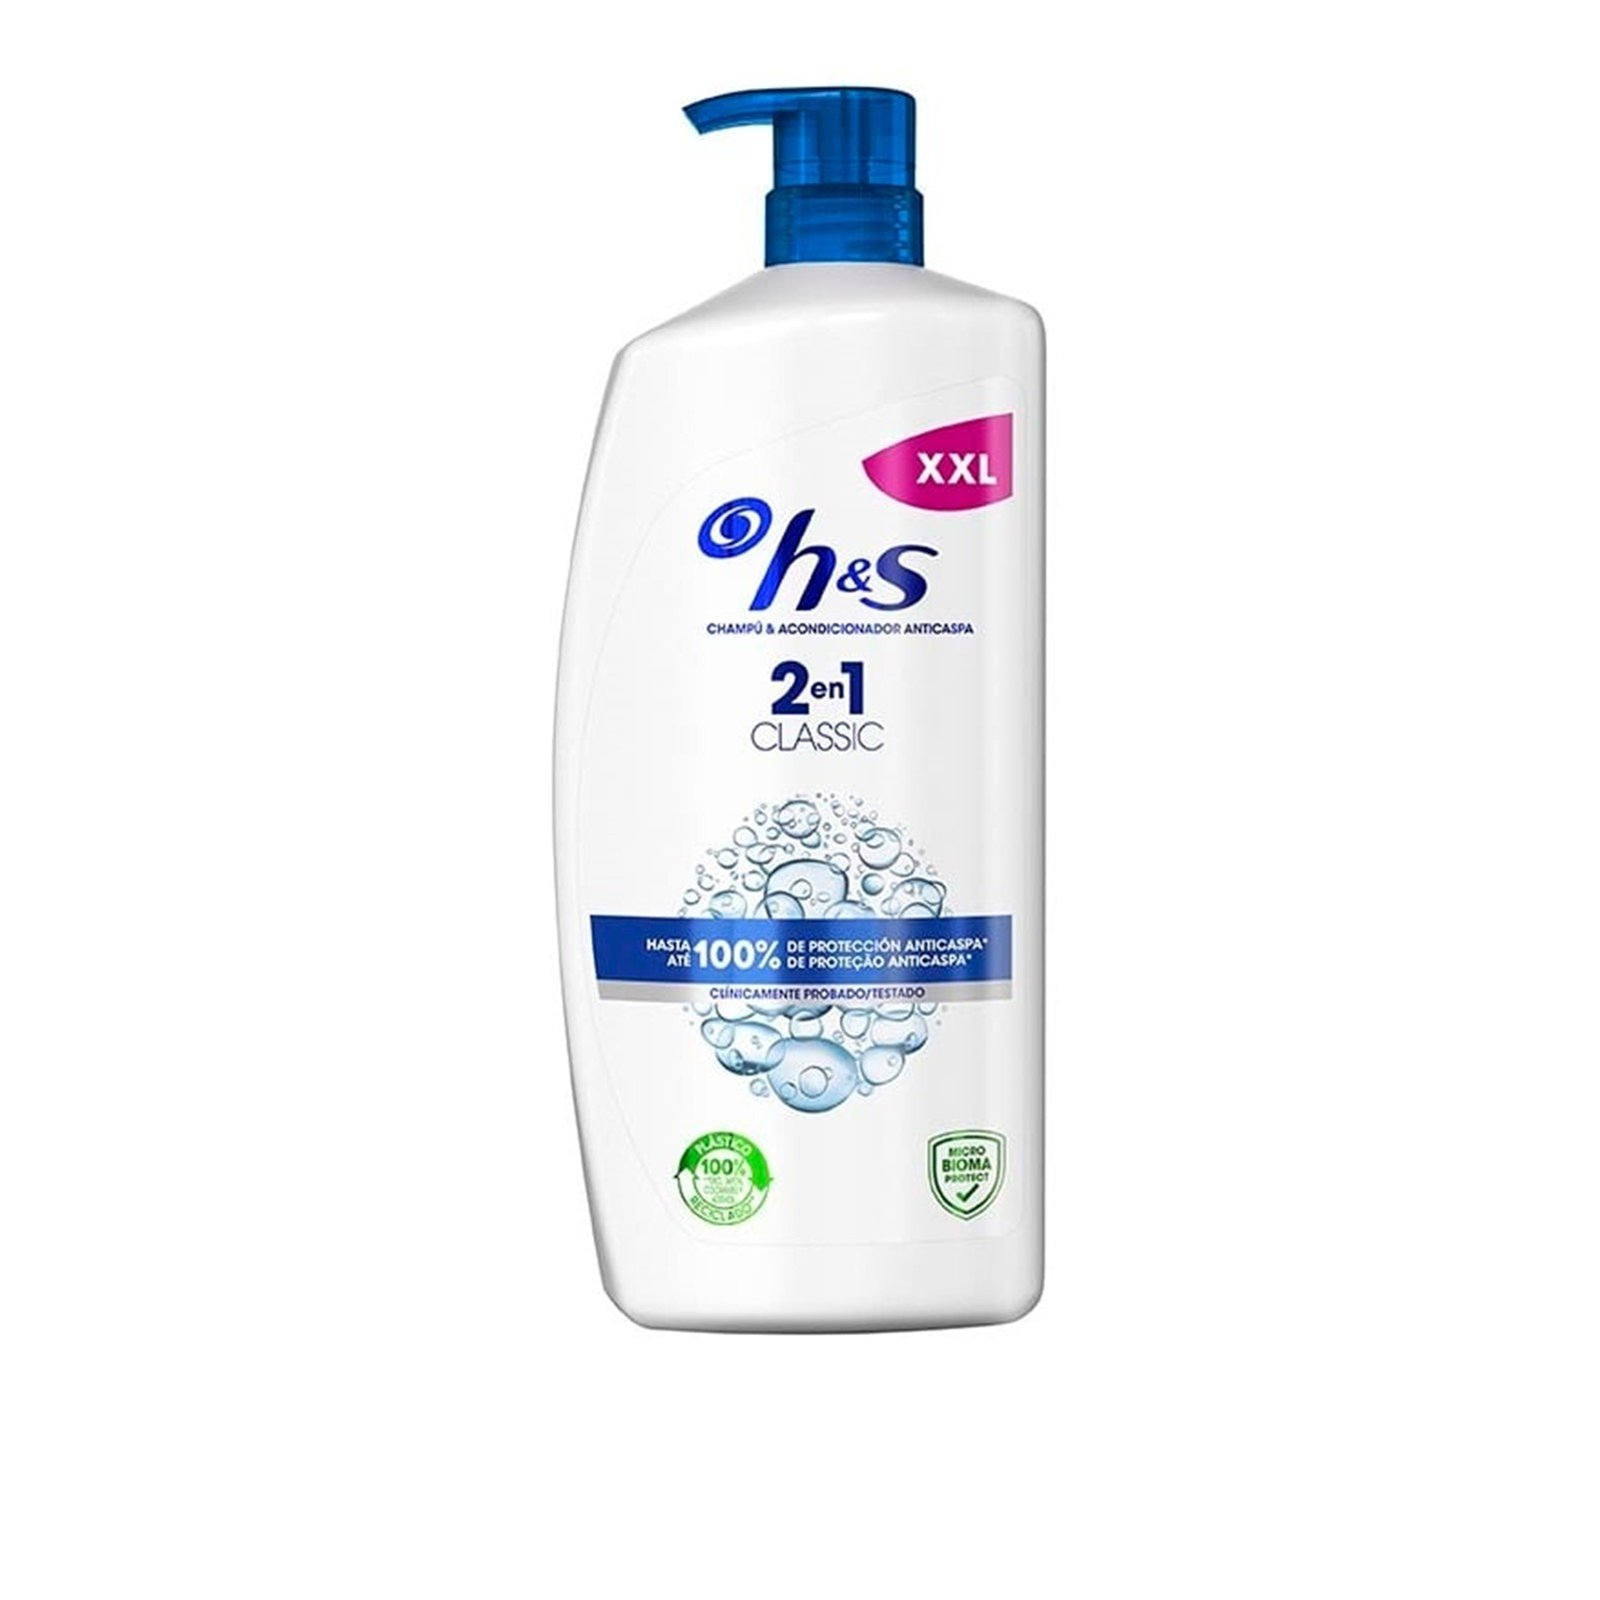 H&S Classic Clean 2-In-1 Shampoo 1L